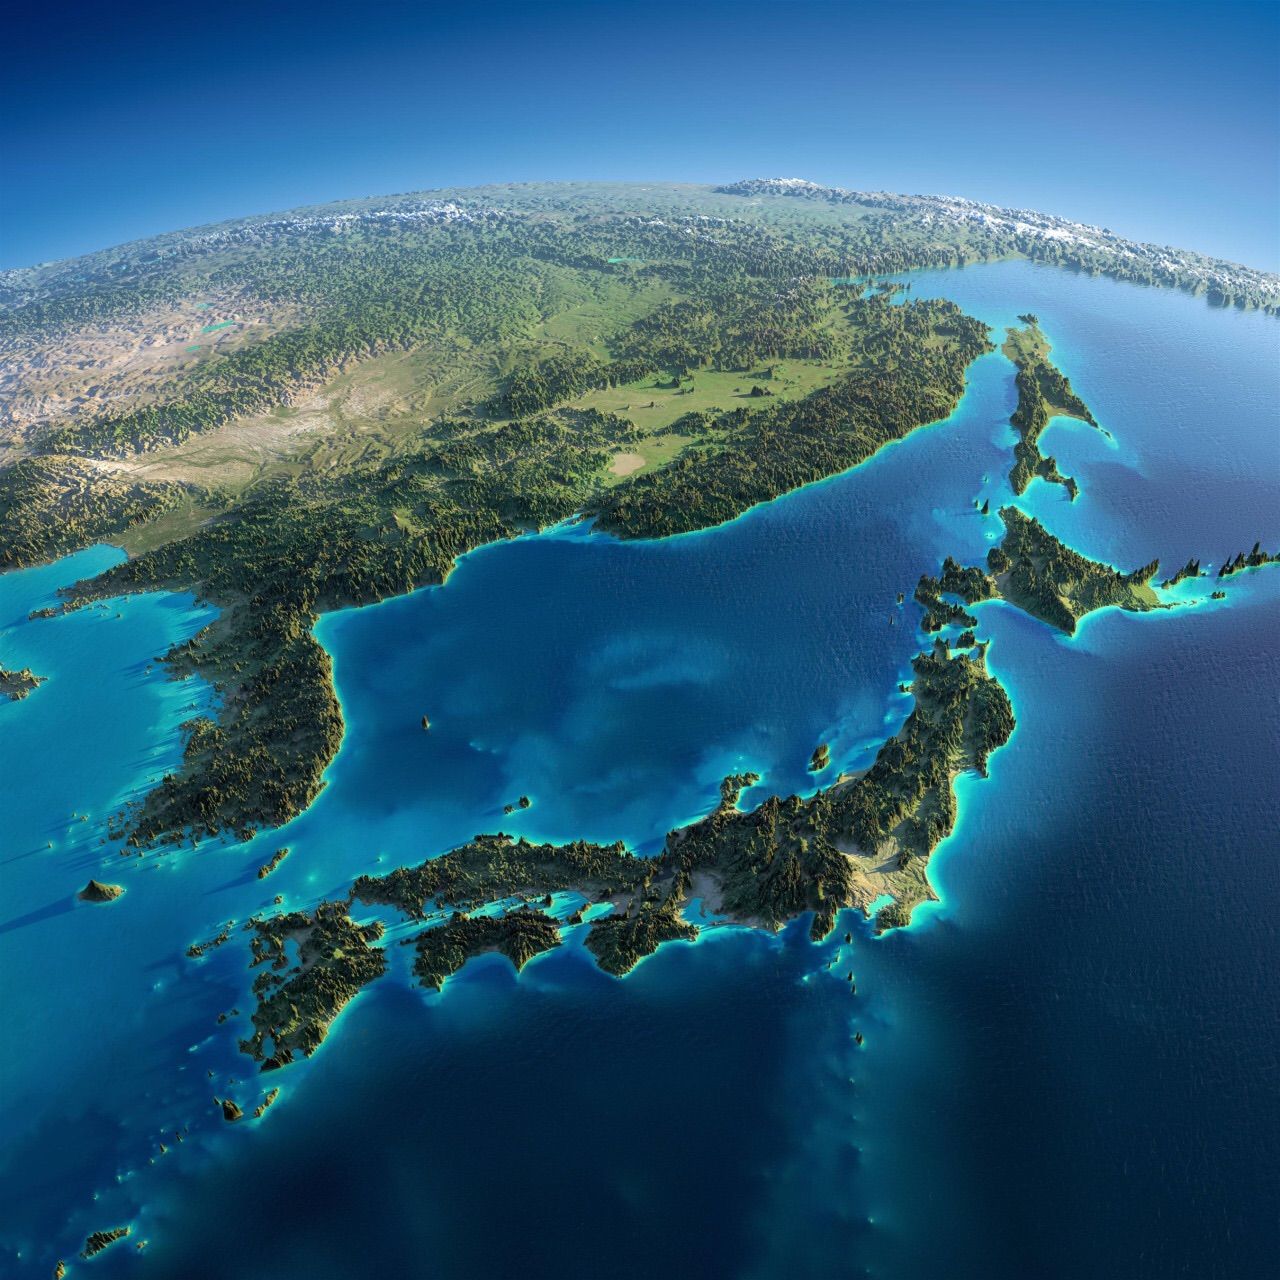 龍神レイキ 川島伸介 百匹目の猿現象加速化計画 日本列島 ならびに 地球 全体に 手が空いた時に レイキをお願いいたします